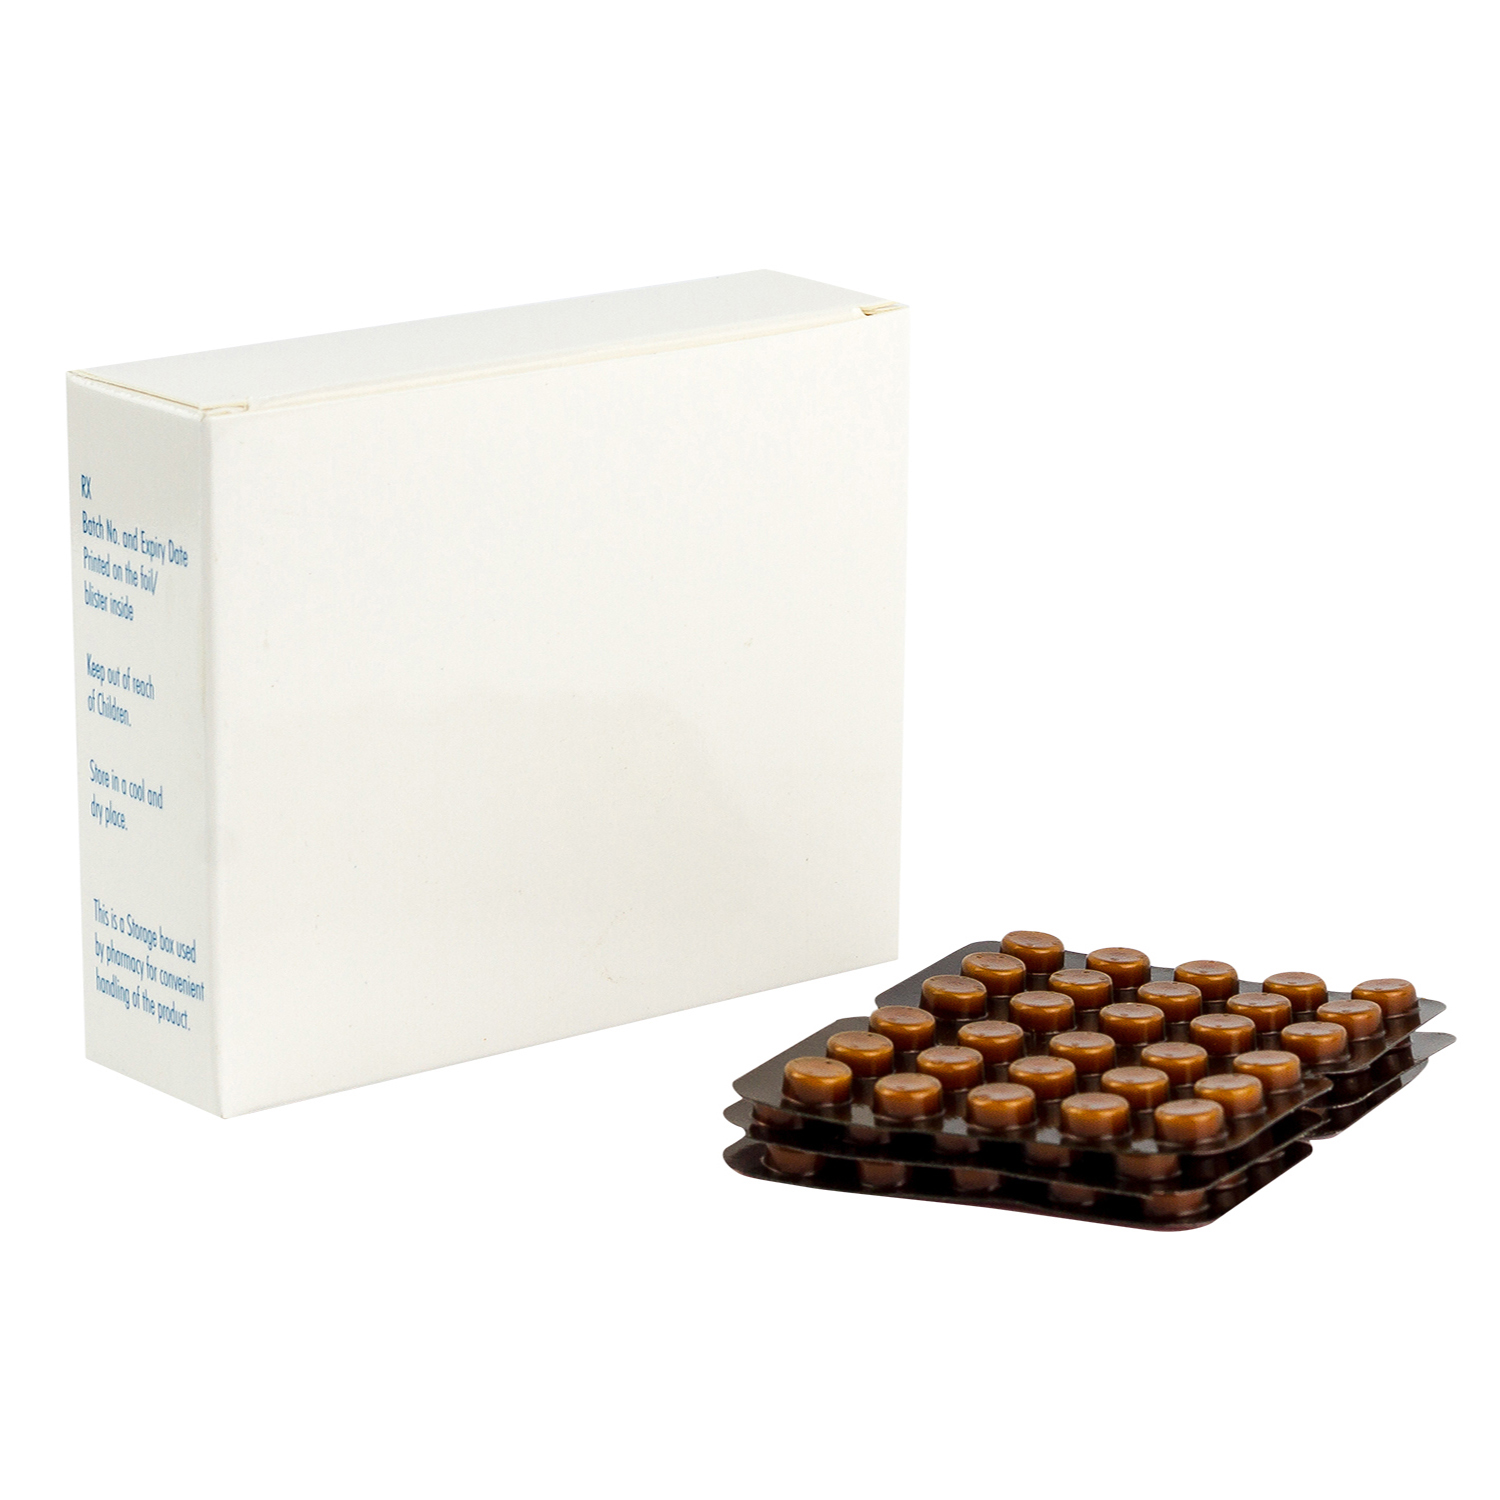 プレドニン5mg90錠 プレドニゾロン 通販 アトピー治療薬 ペット薬通販のベストケンコー